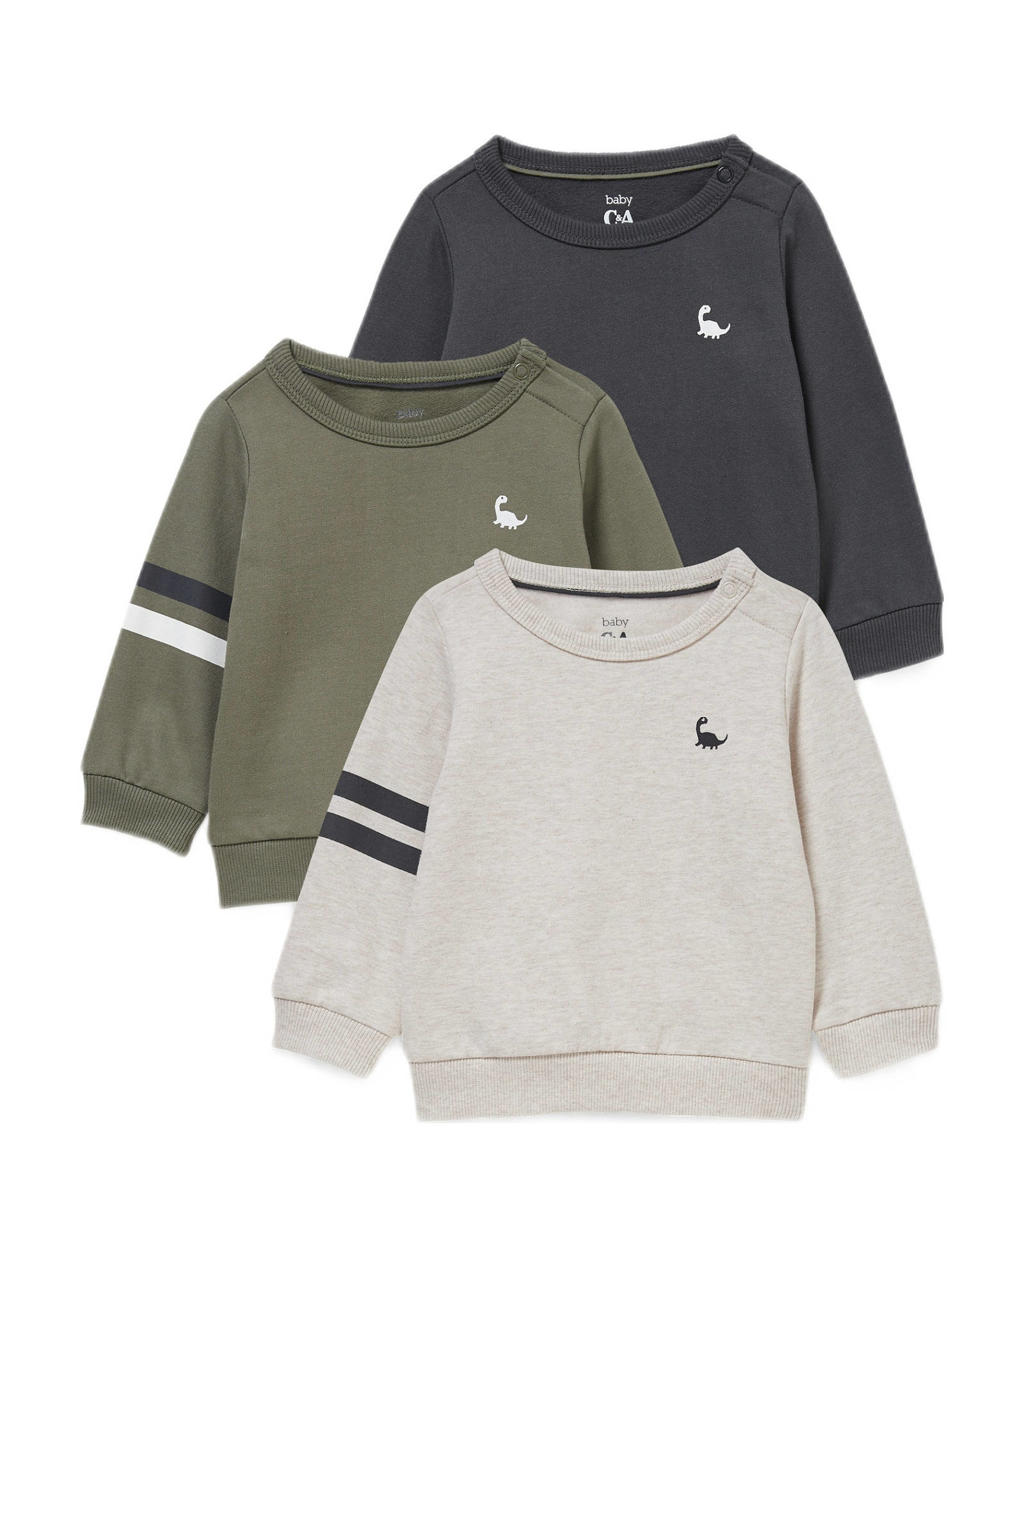 C&A sweater - set van 3 beige/groen/donkerblauw